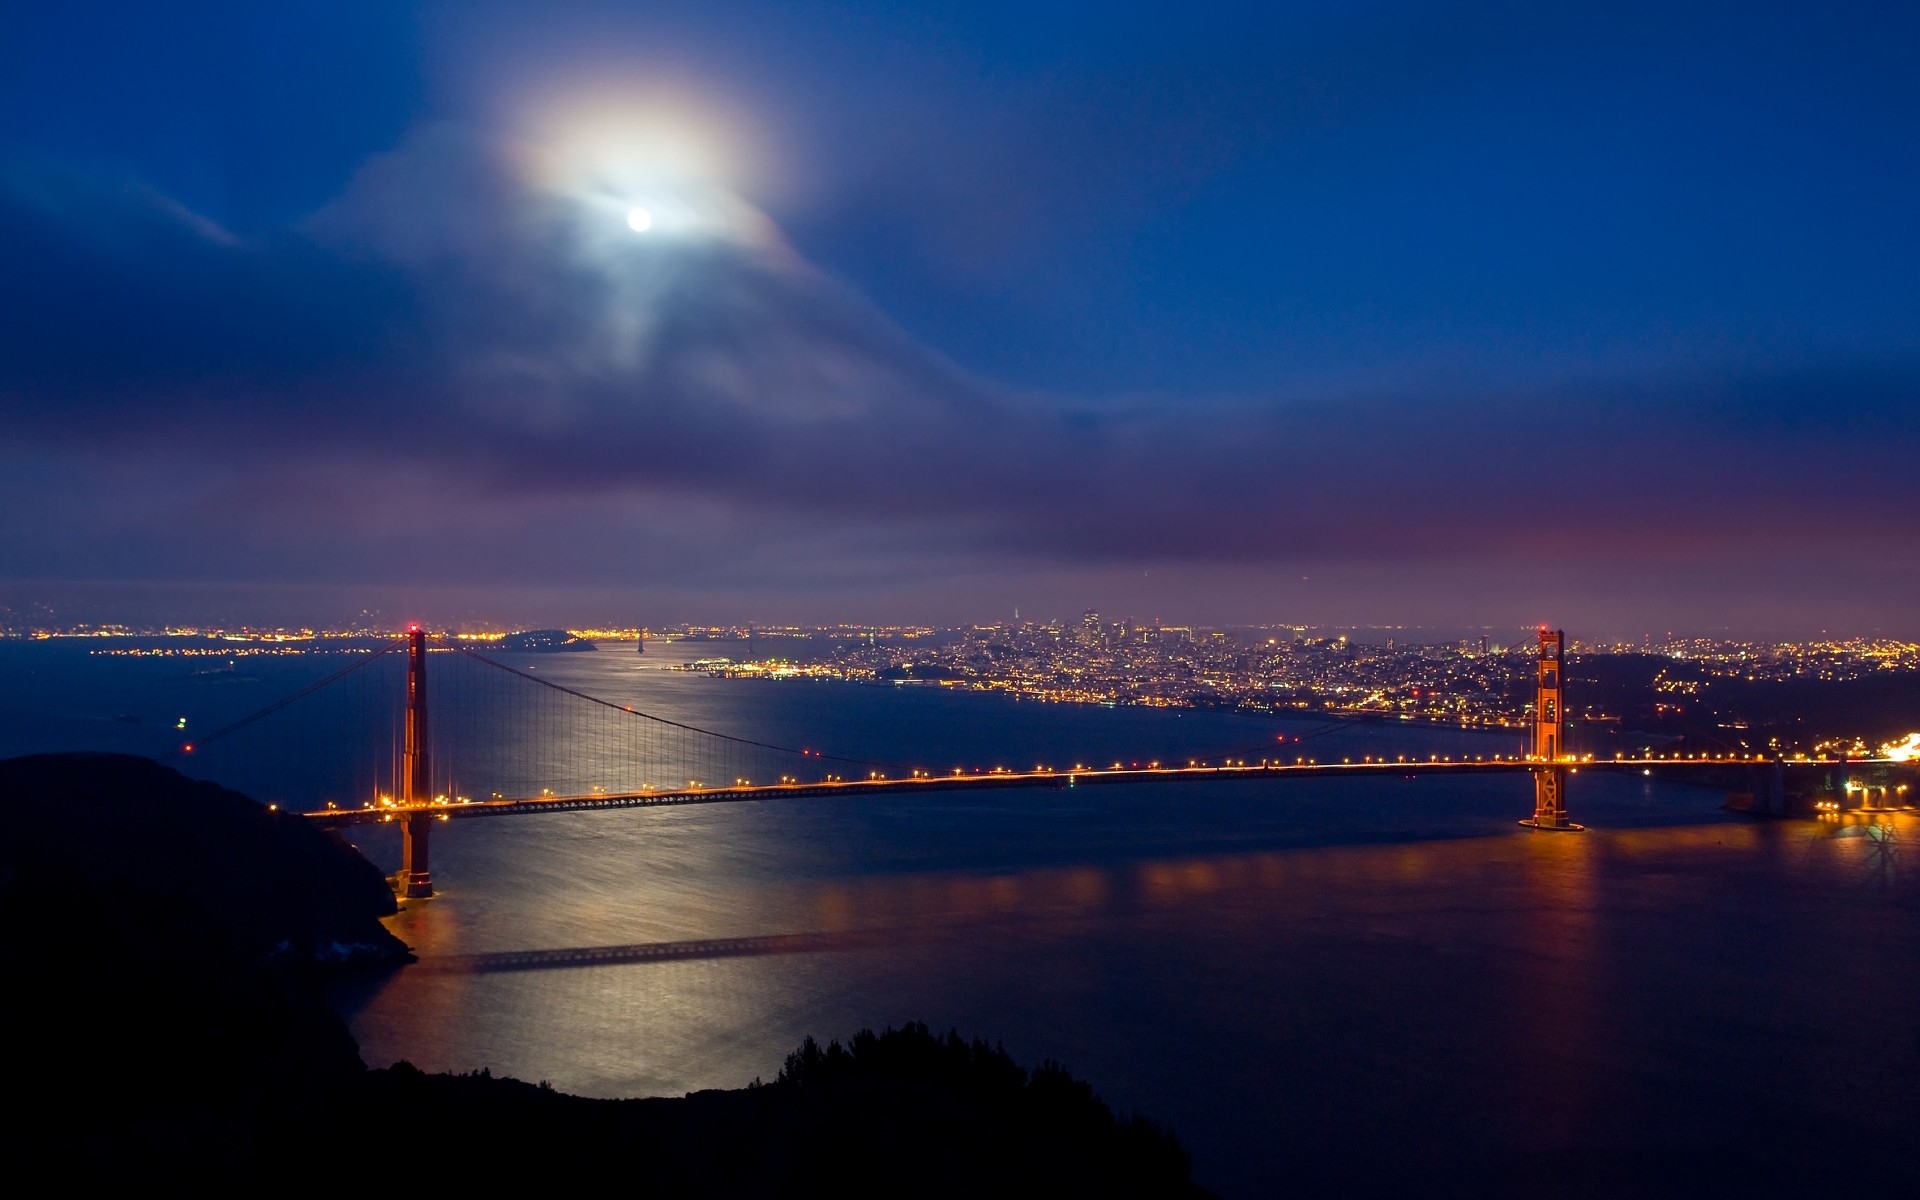 Обои Сан-Франциско золотые ворота ночь - бесплатные картинки на Fonwall